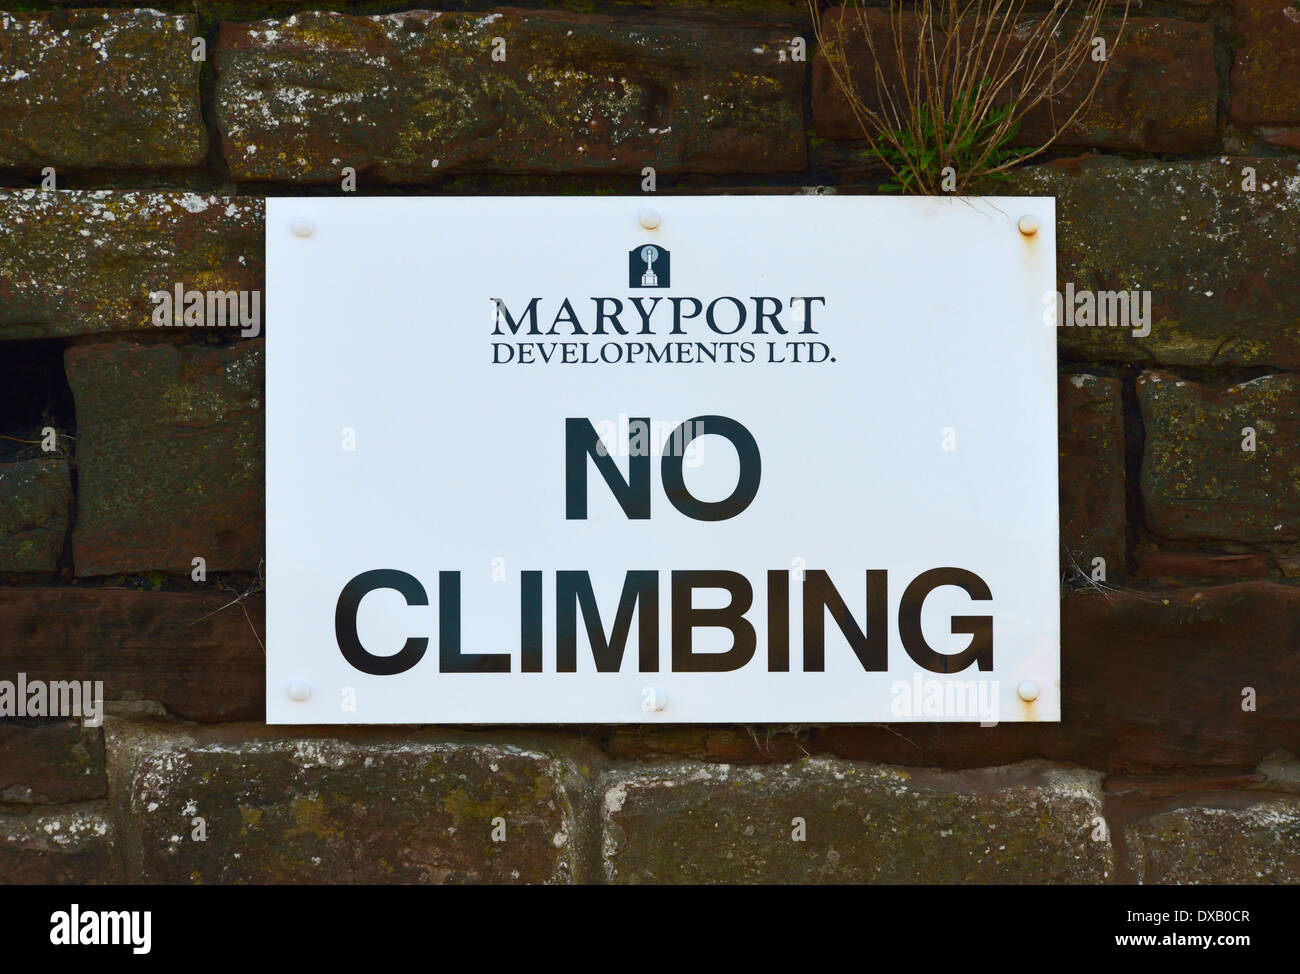 Panneau d'avertissement, "ARYPORT DEVELOPMENTS LTD. Pas d'Escalade" le port, Maryport, Cumbria, Angleterre, Royaume-Uni, Europe. Banque D'Images